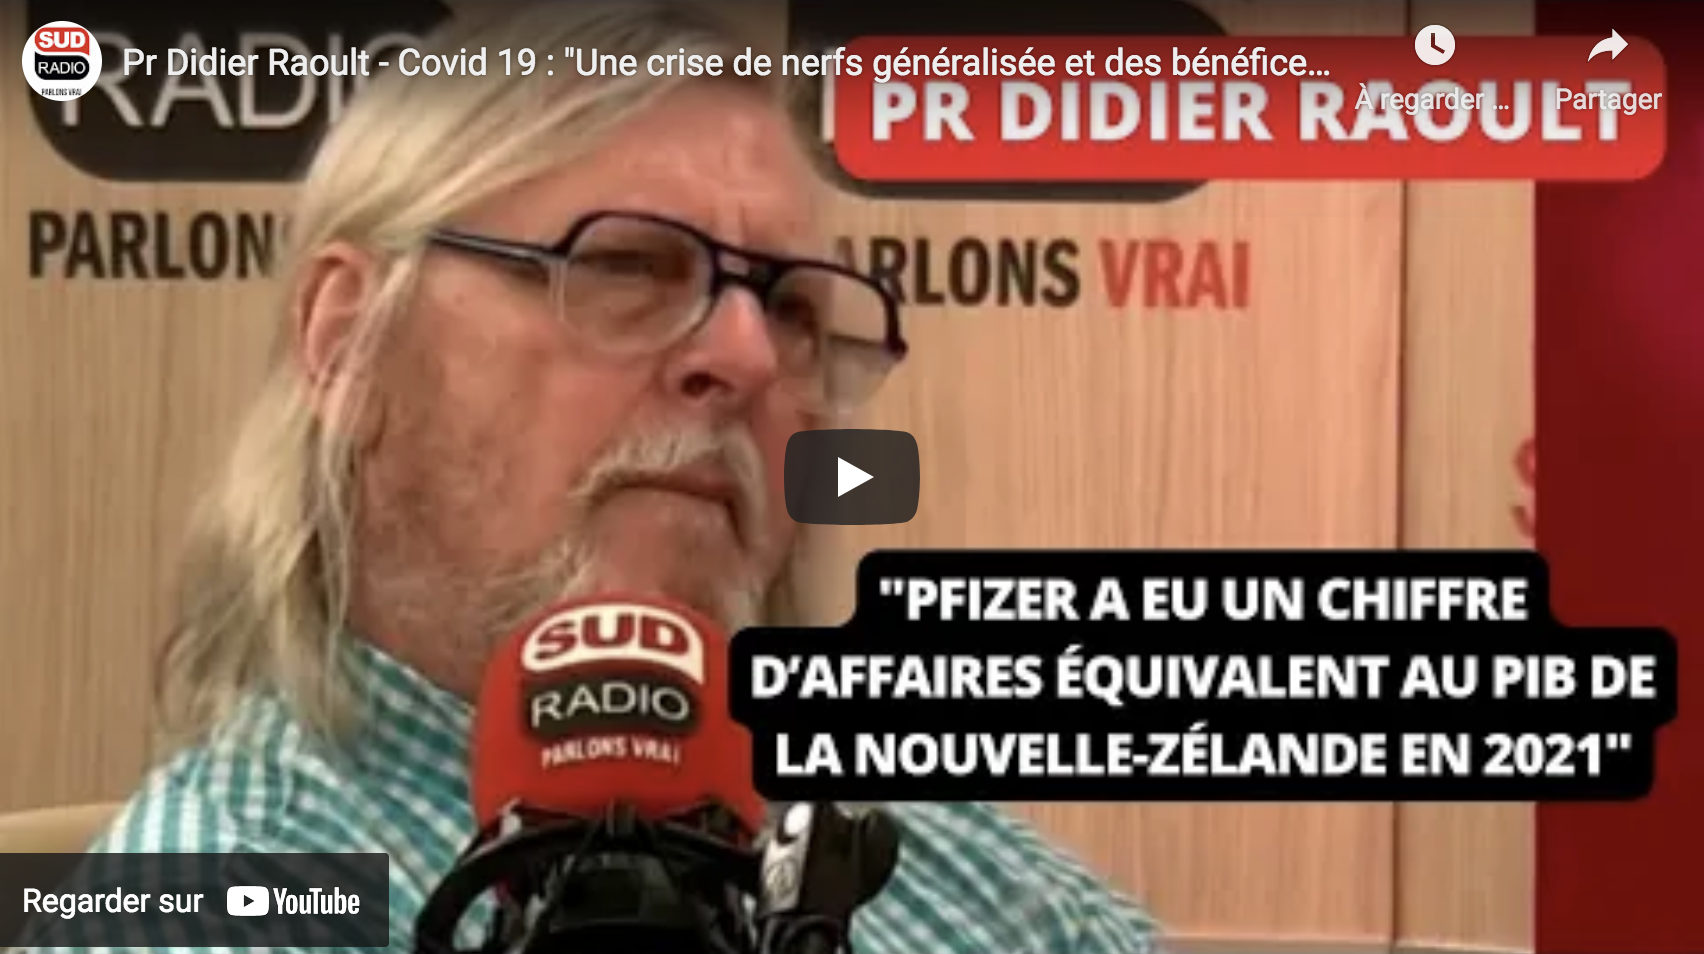 Didier Raoult : “En France, on refuse de voir que la science évolue !” (VIDÉO)